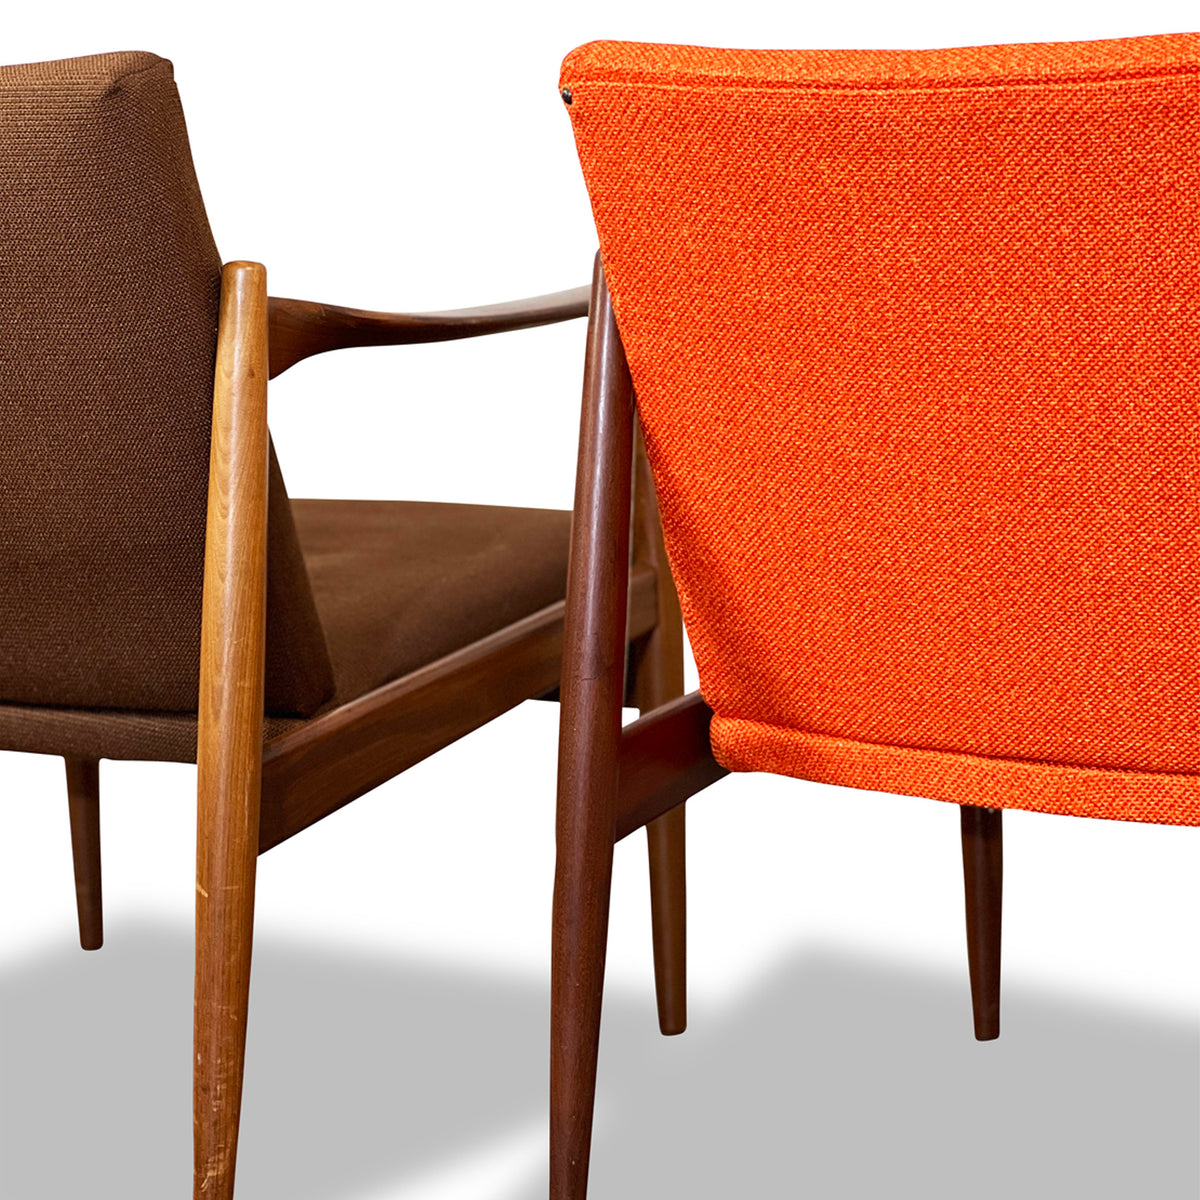 Pair of Norwegian Lounge Chairs by Sandvik Mobelfabrik